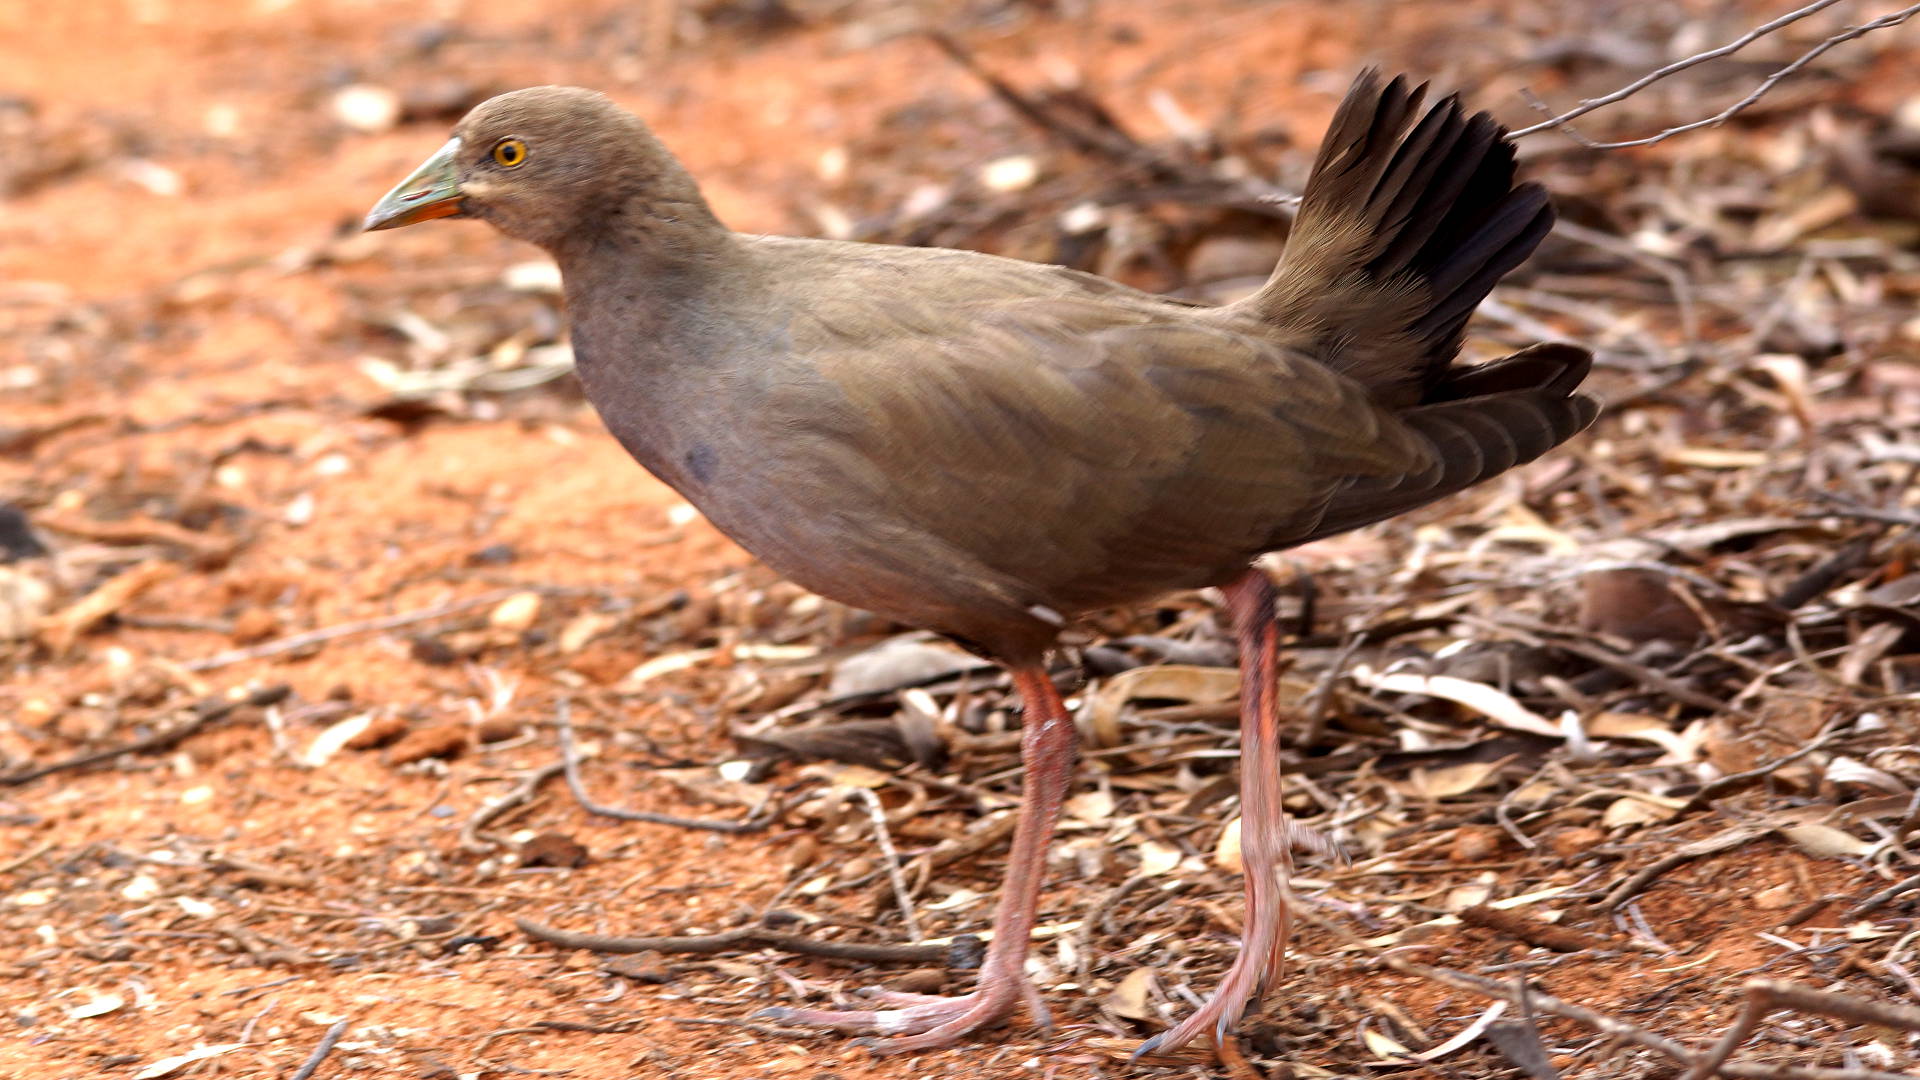 Black-tailed Native-hen (Tribonyx ventralis)